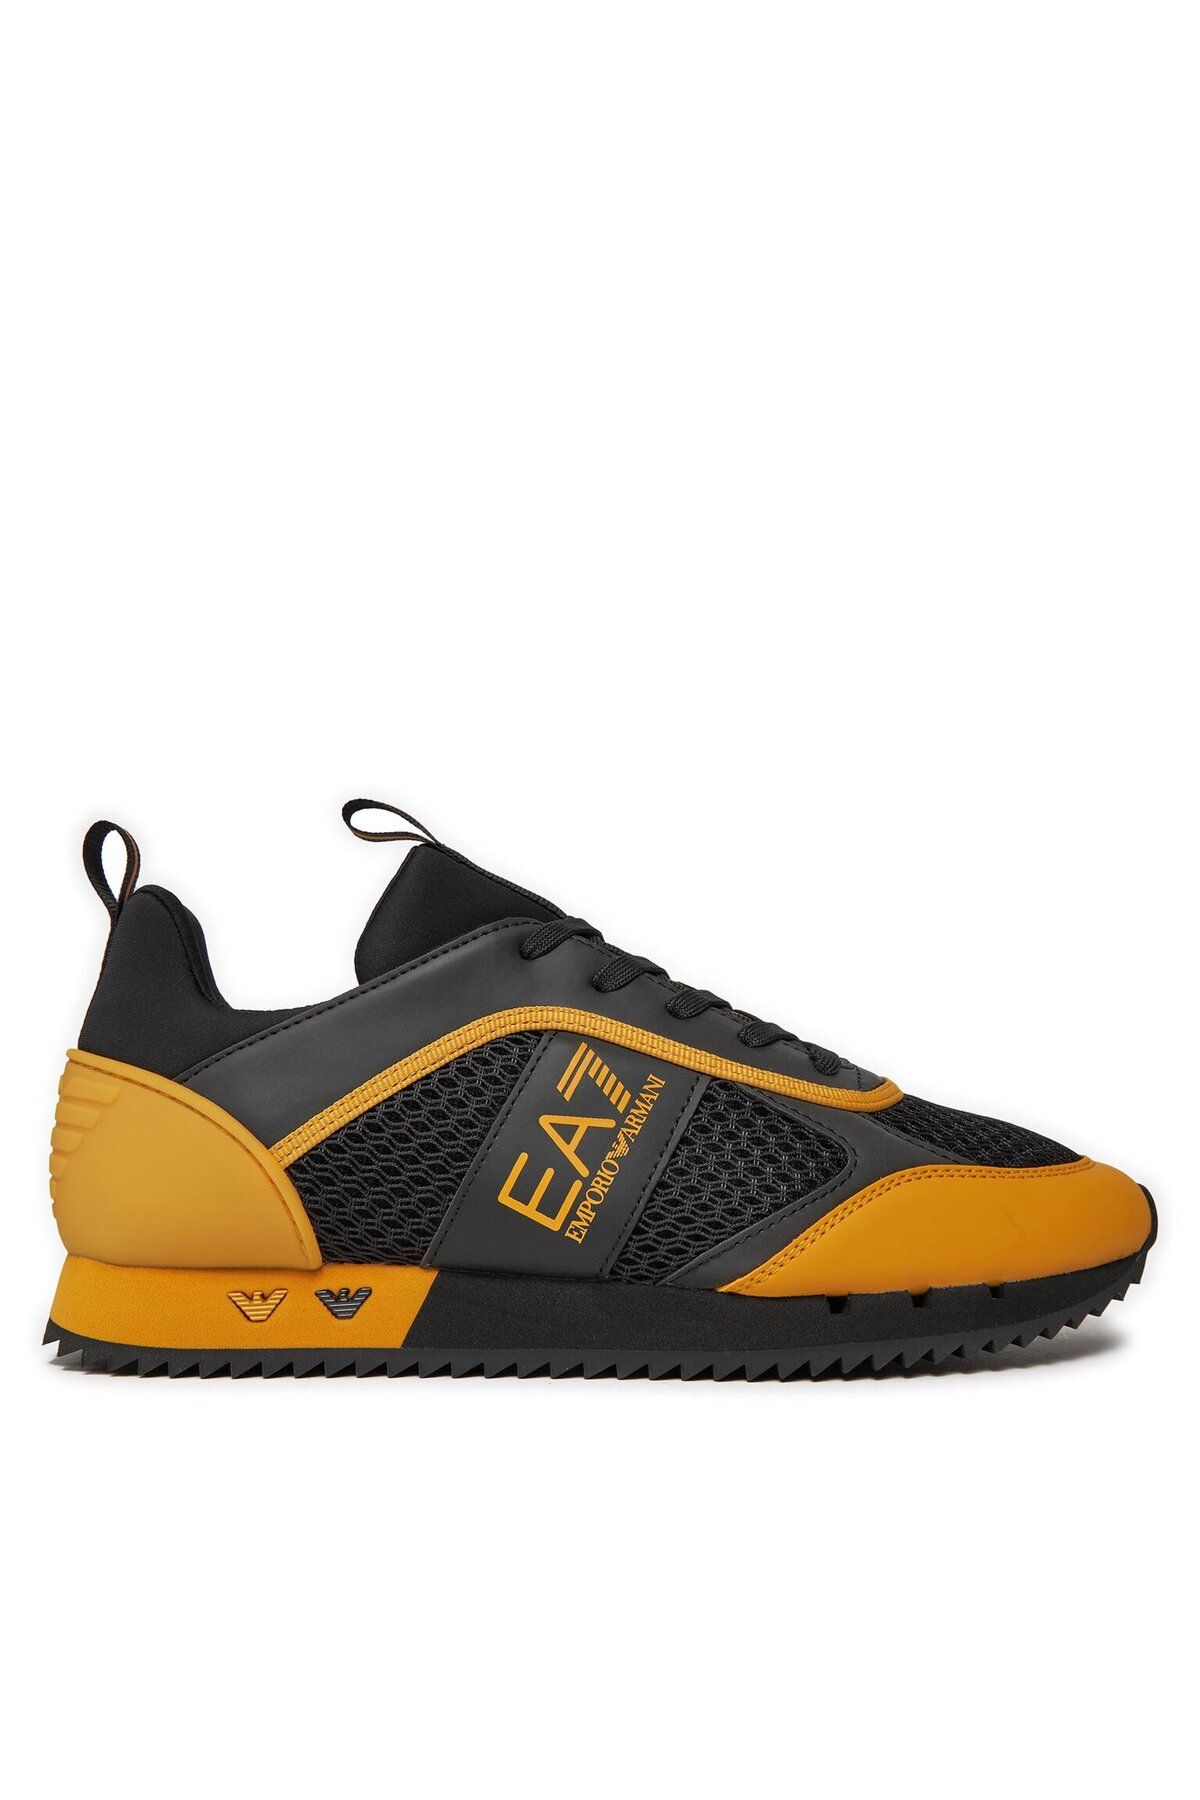 EA7 UNISEX Fileli Şerit Logolu Bağıcıklı Siyah-Turuncu1 Sneaker X8X027 XK050-T854